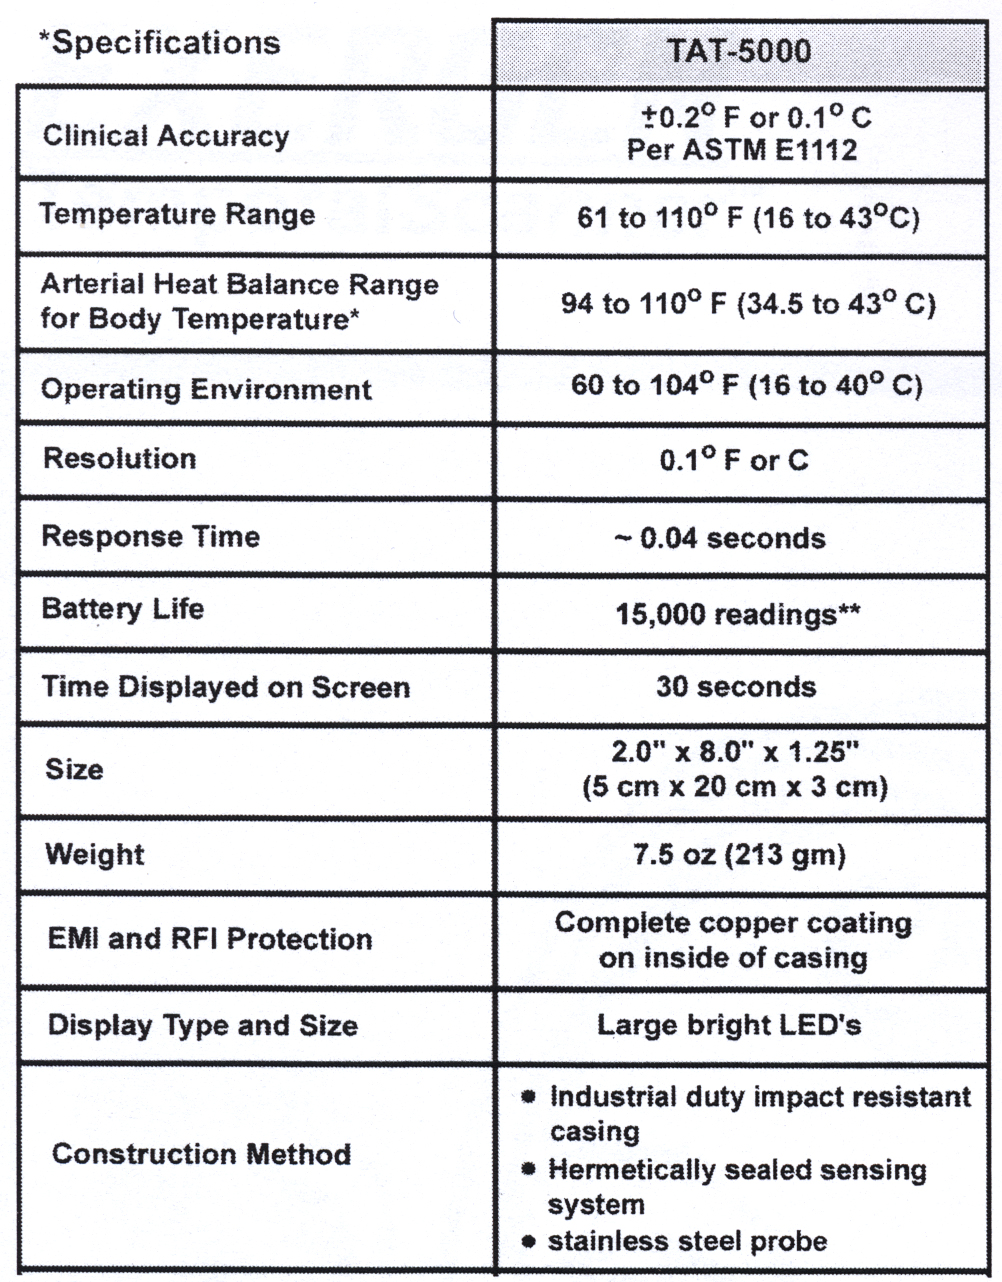 *Spesifikasjoner Klinisk nøyaktighet 0,1 C eller 0,2 F per ASTM E1112 Temperaturområde 16 til 43 C (61 til 110 F) Arteriell varmebalanseområde for kroppstemperatur 34,5 til 43 C (94 til 110 F)